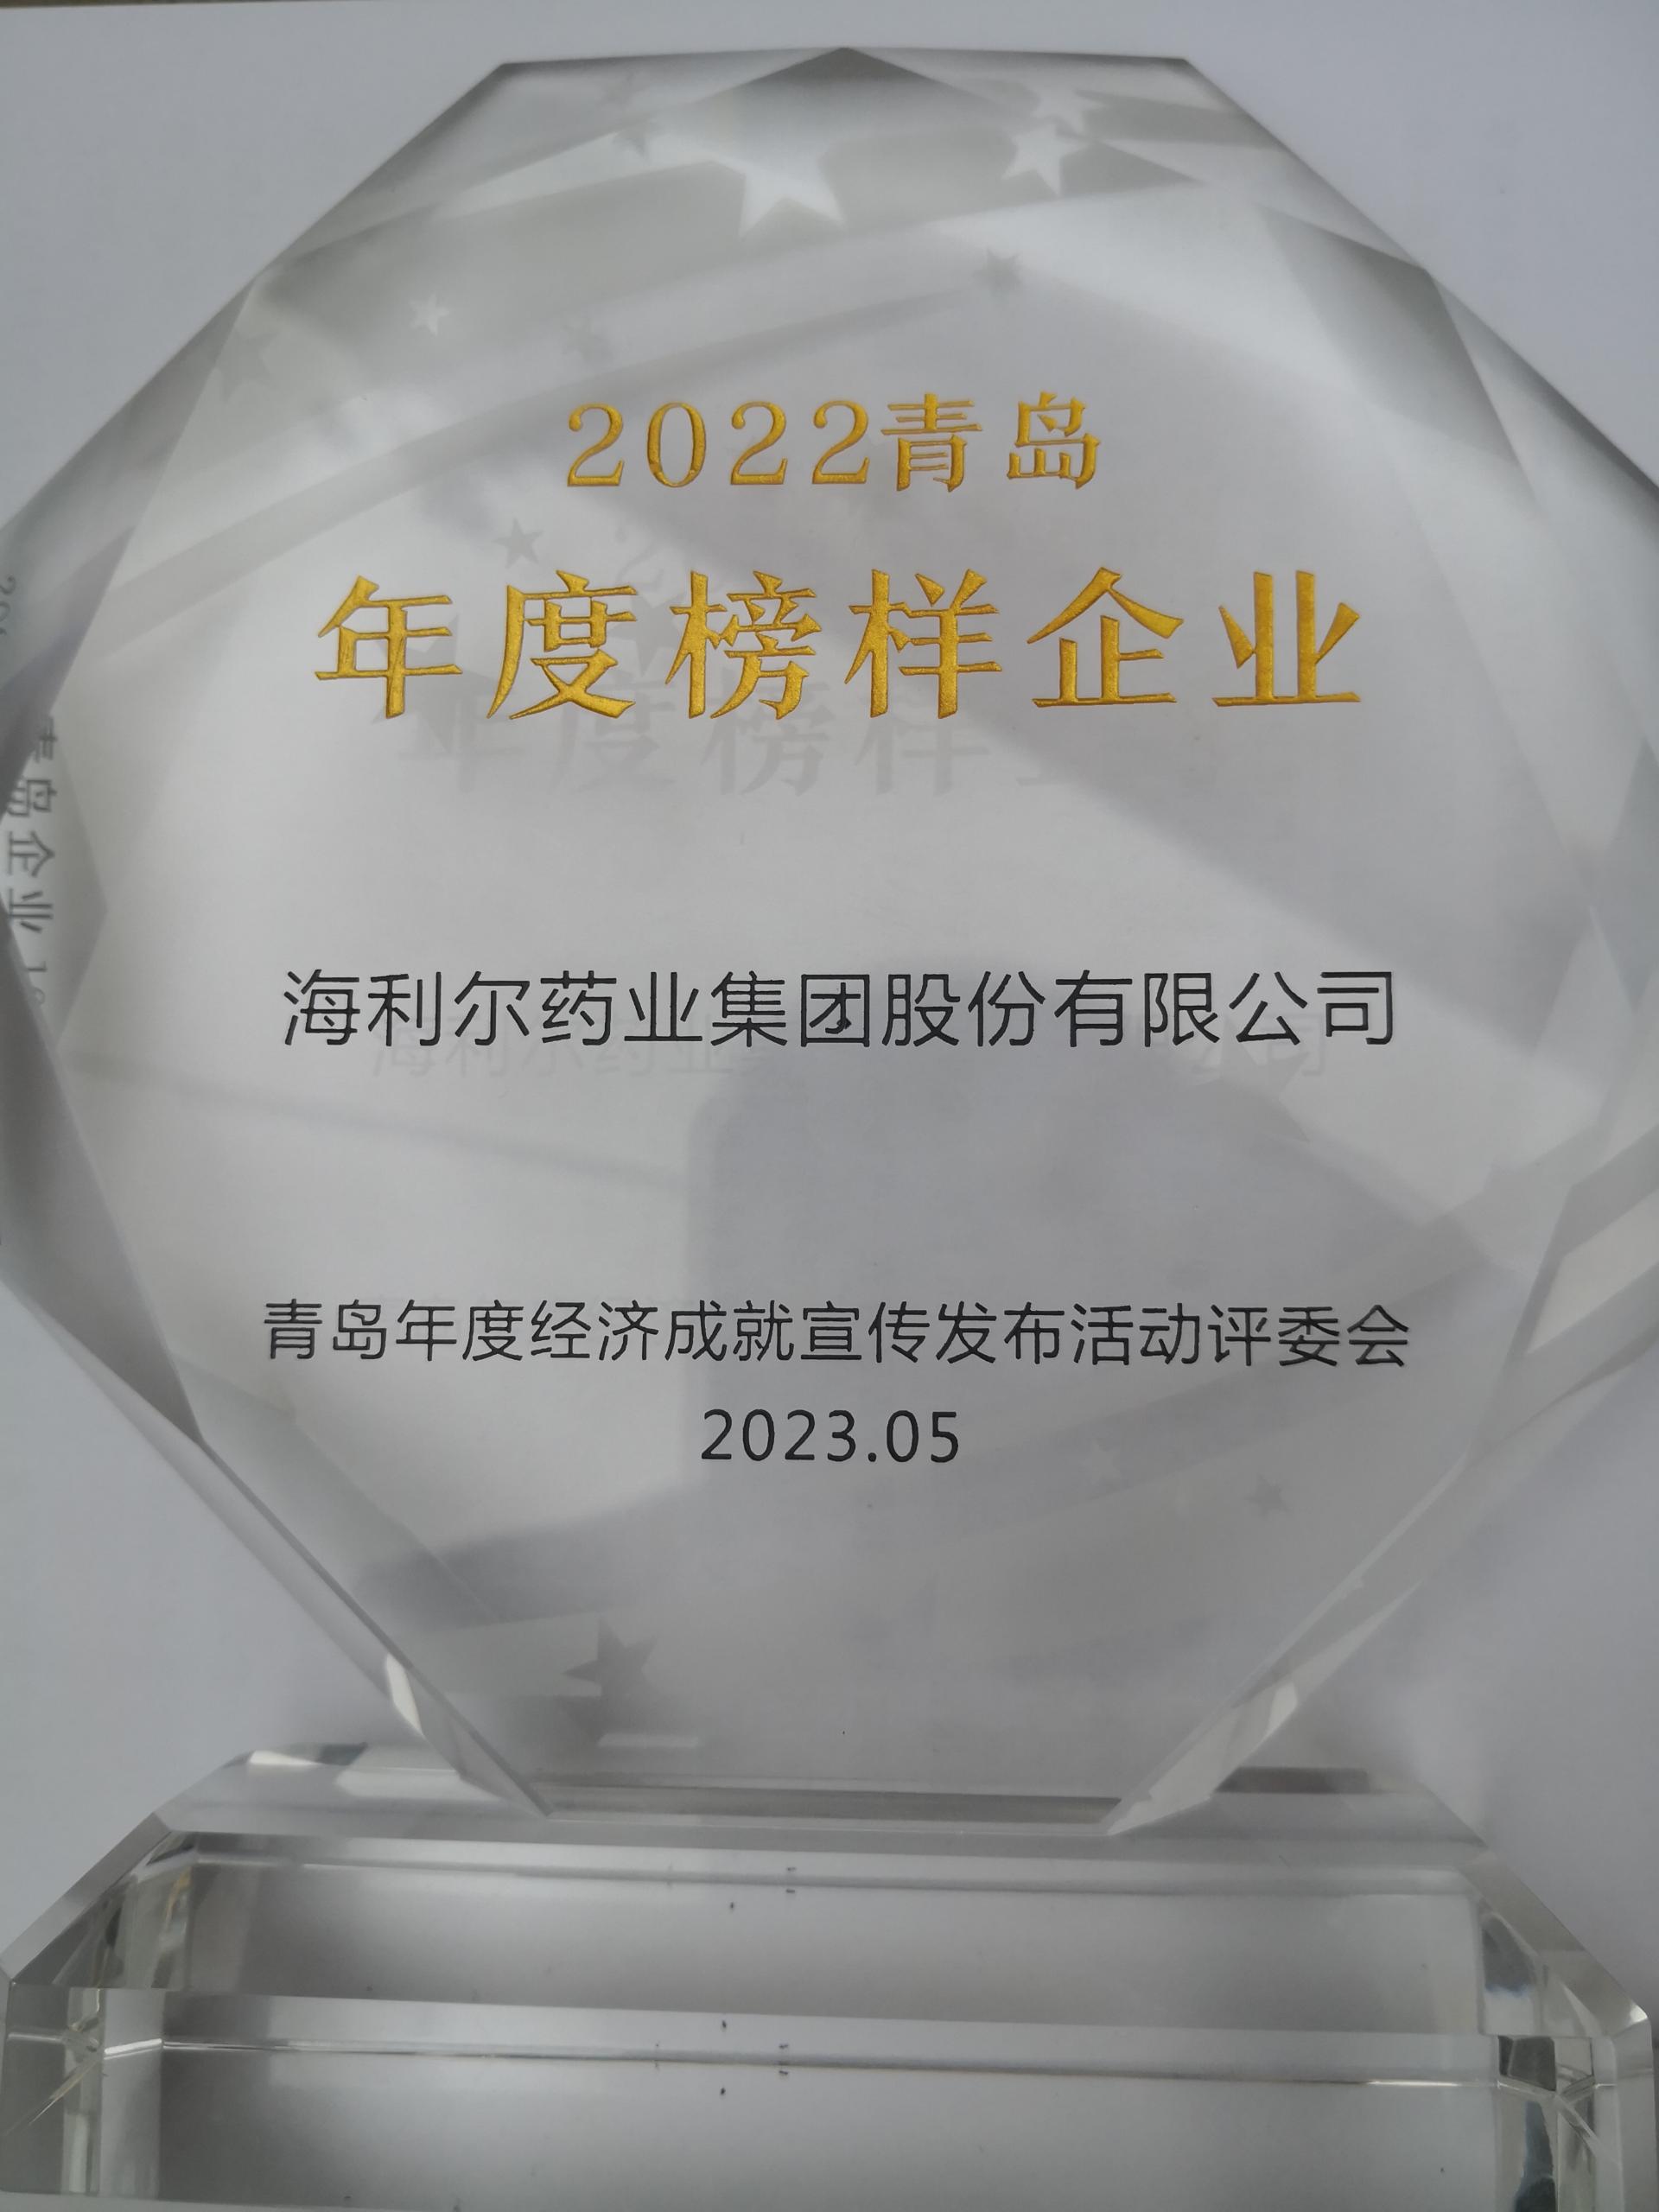 祝贺！集团获评2022青岛年度榜样企业